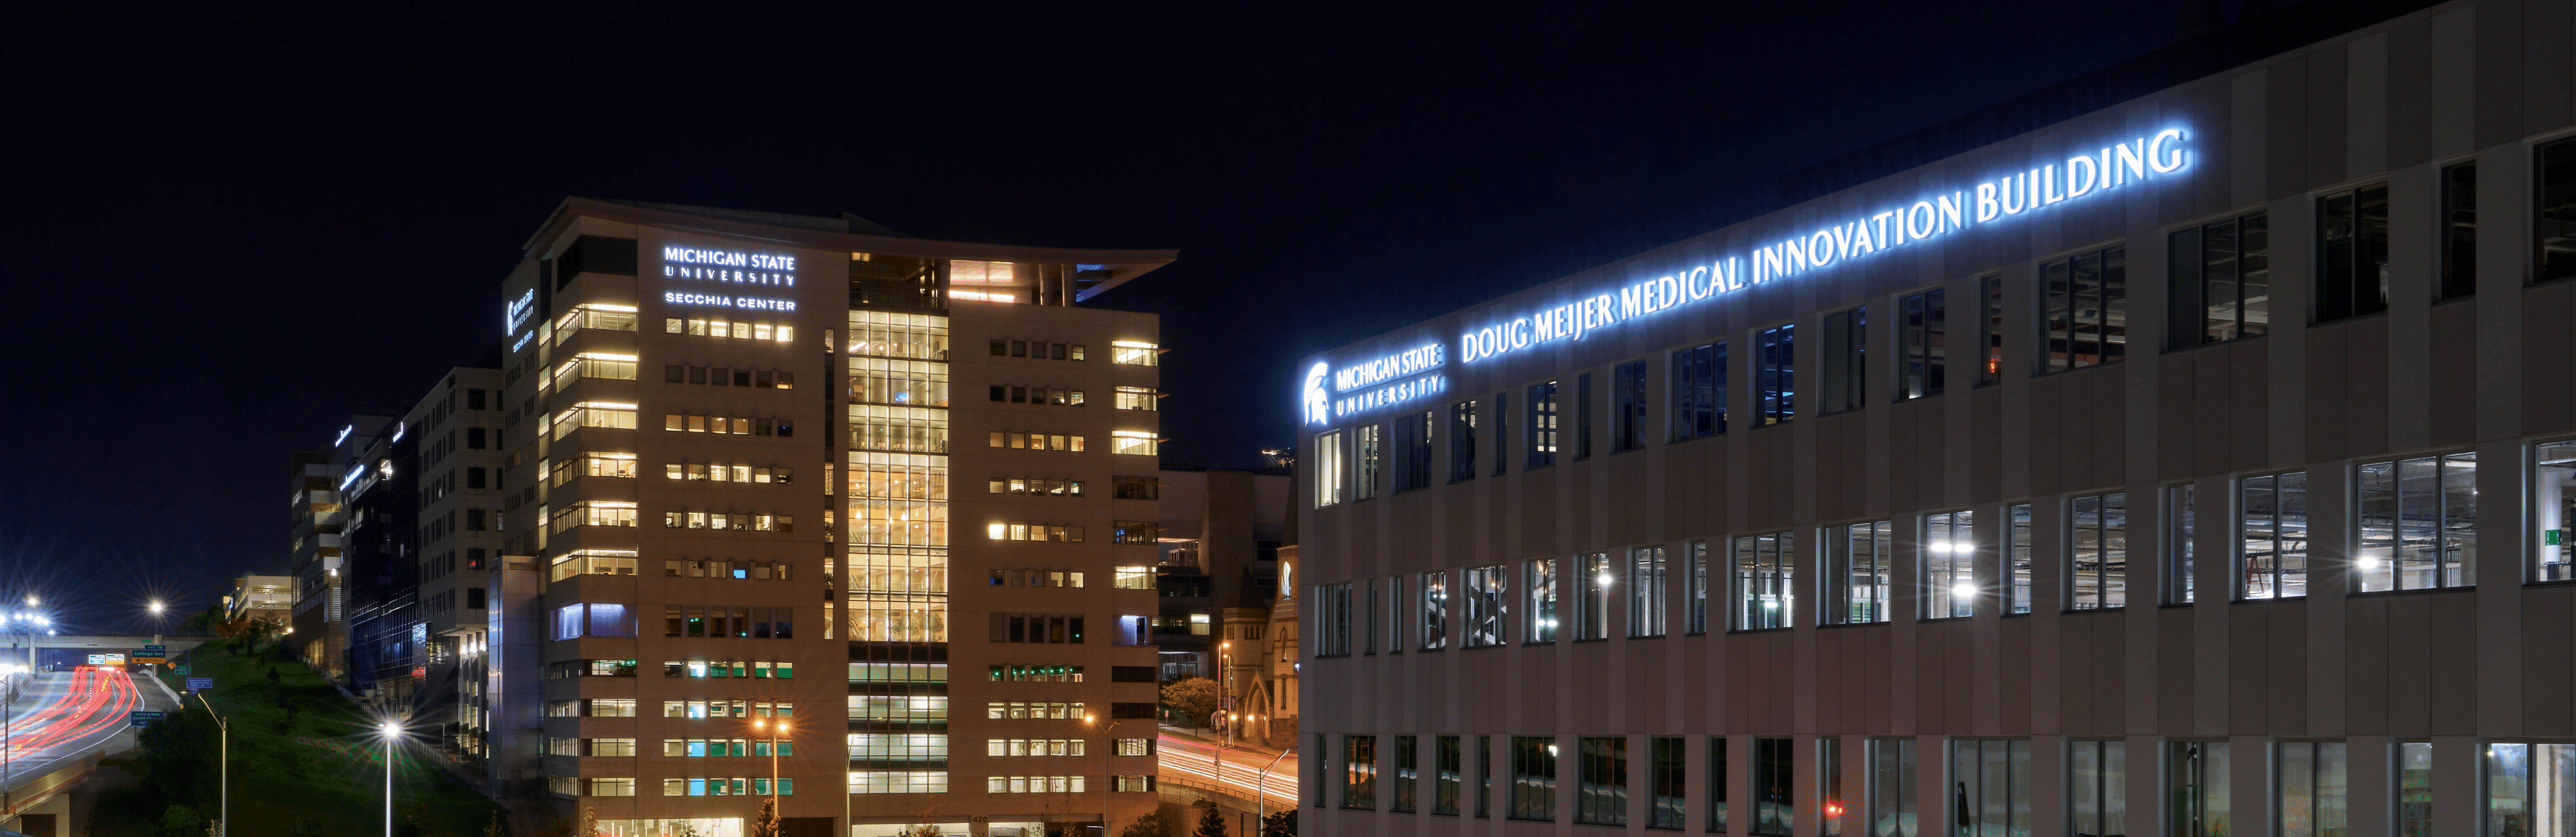 MSU Innovation Building at night.